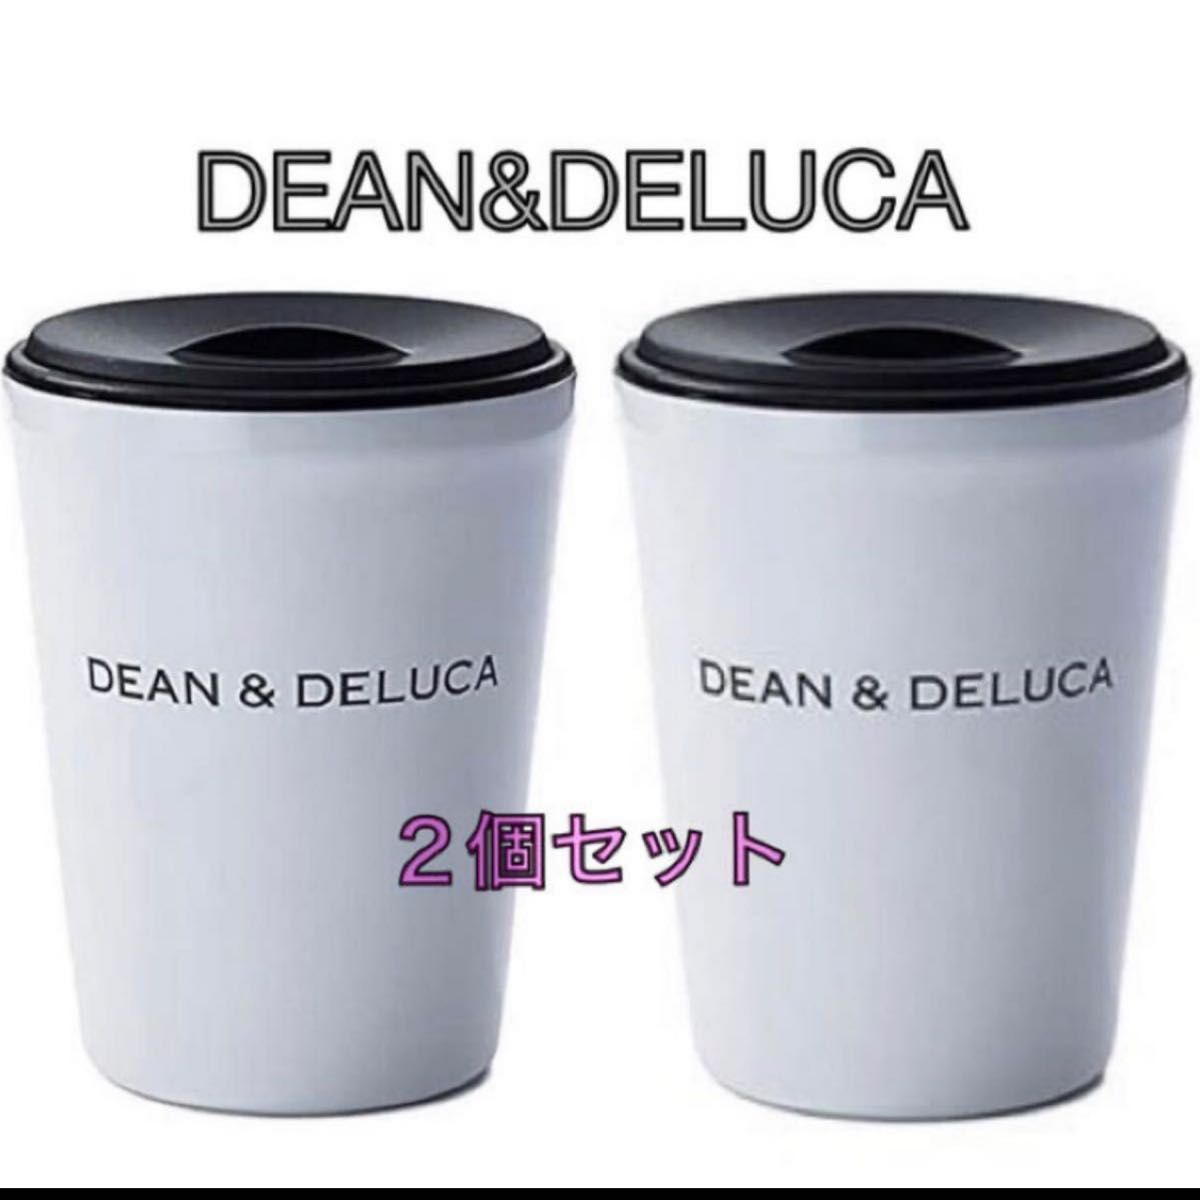 2個セット！！DEAN&DELUCA ディーンアンドデルーカ  ステンレスタンブラー ( ホワイト ) 